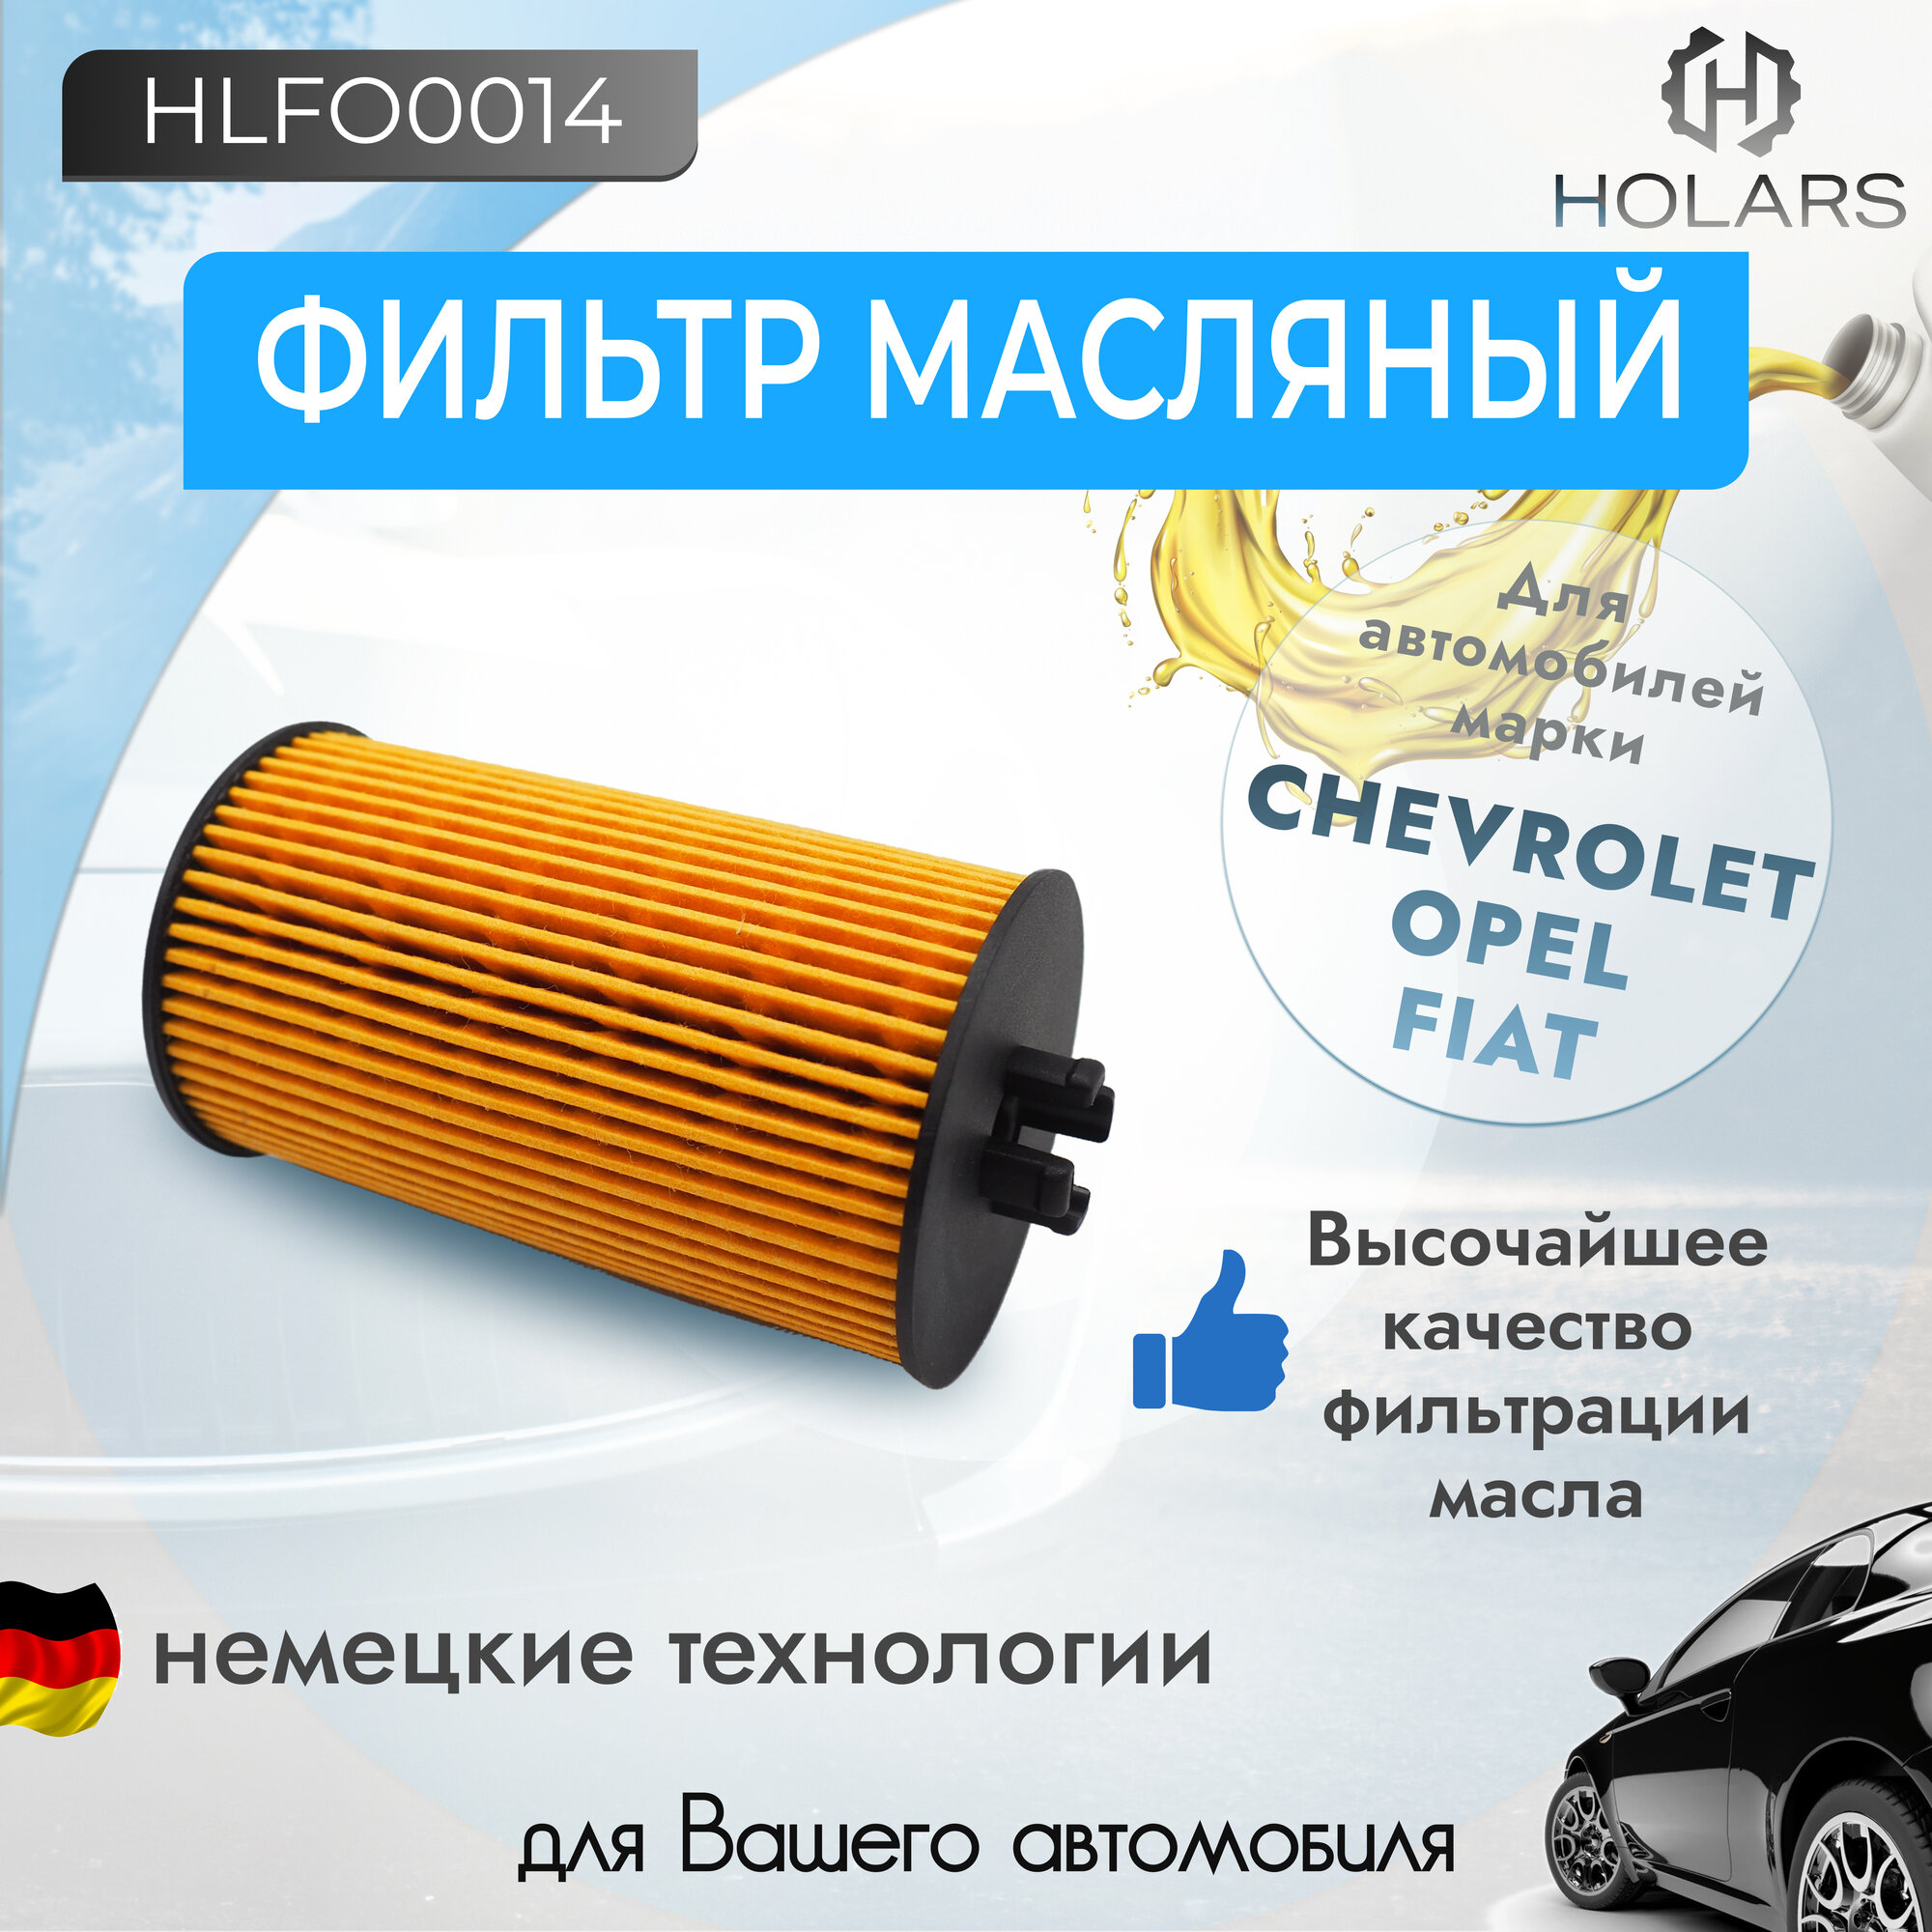 Масляный фильтр (вставка) для автомобиля Opel Astra G, H, J 98-, Vectra C 05-, Chevrolet Aveo (T250, T300) 08-, Cruze (J300, J305, J308) 09-